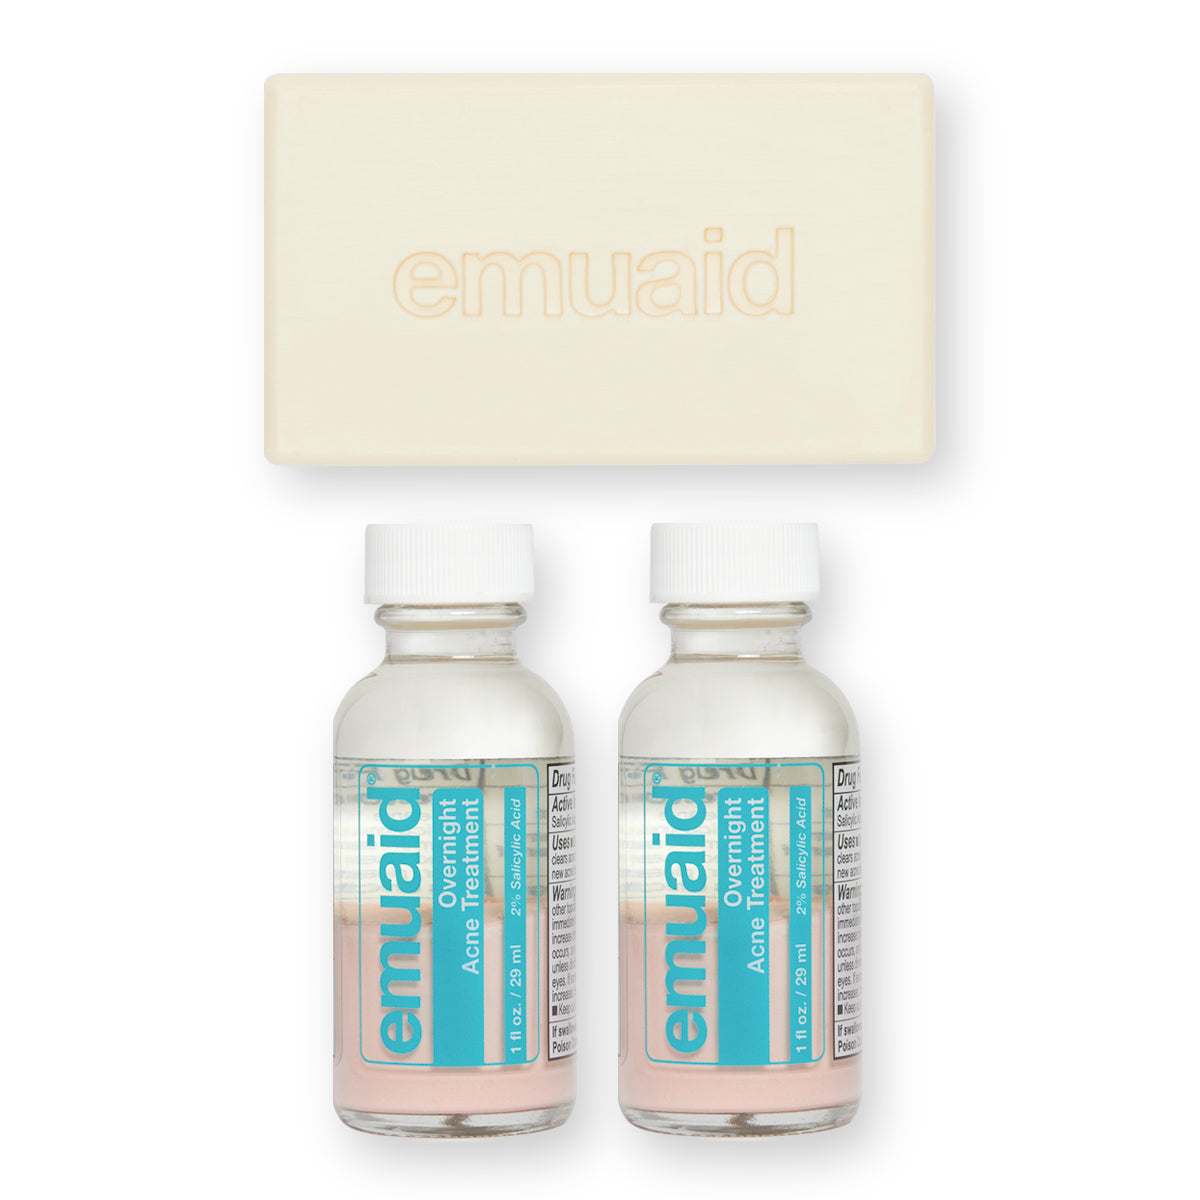 Dies ist ein Bild von 2 Flaschen EMUAID® Overnight Acne Treatment und dem EMUAID® Therapeutic Moisture Bar.